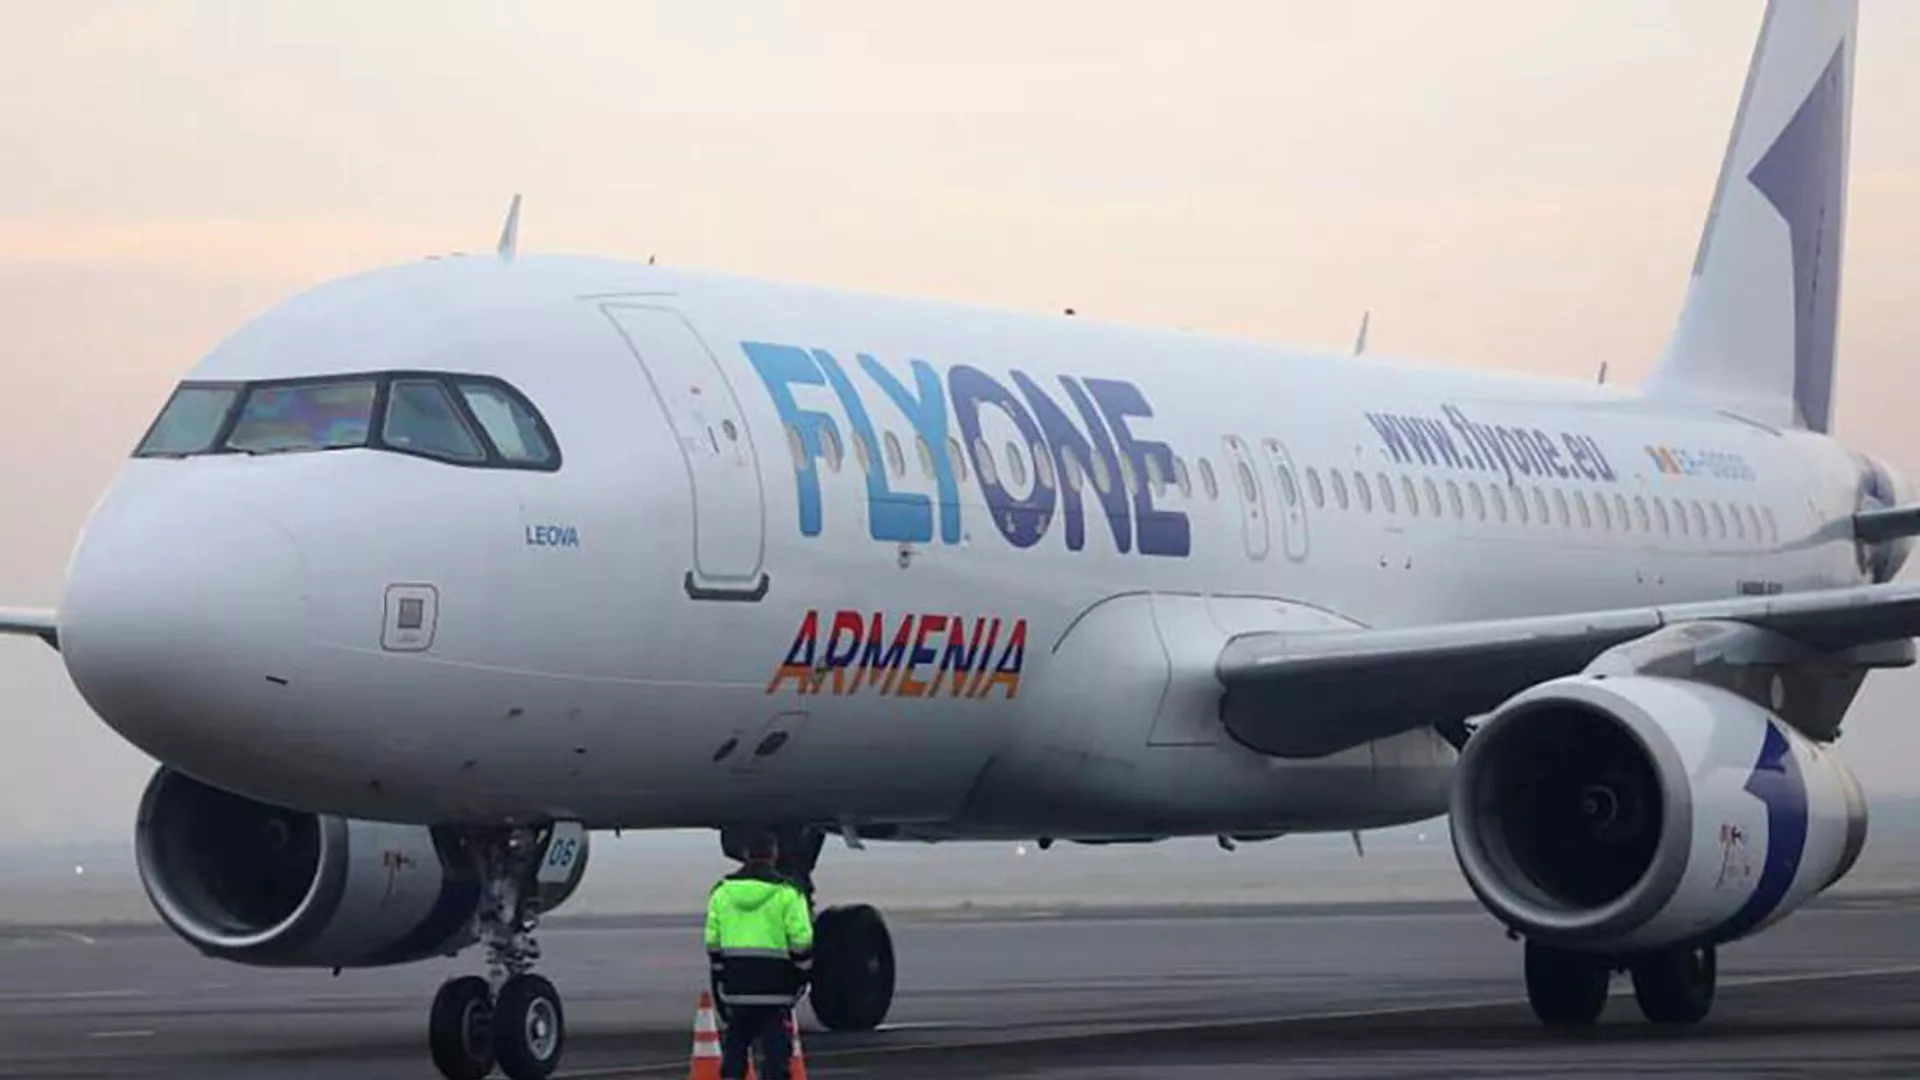 FlyOne Armenia-ն ոչ կանոնավոր ուղիղ չվերթներ կիրականացնի Երևան-Անթալիա- Երևան երթուղով